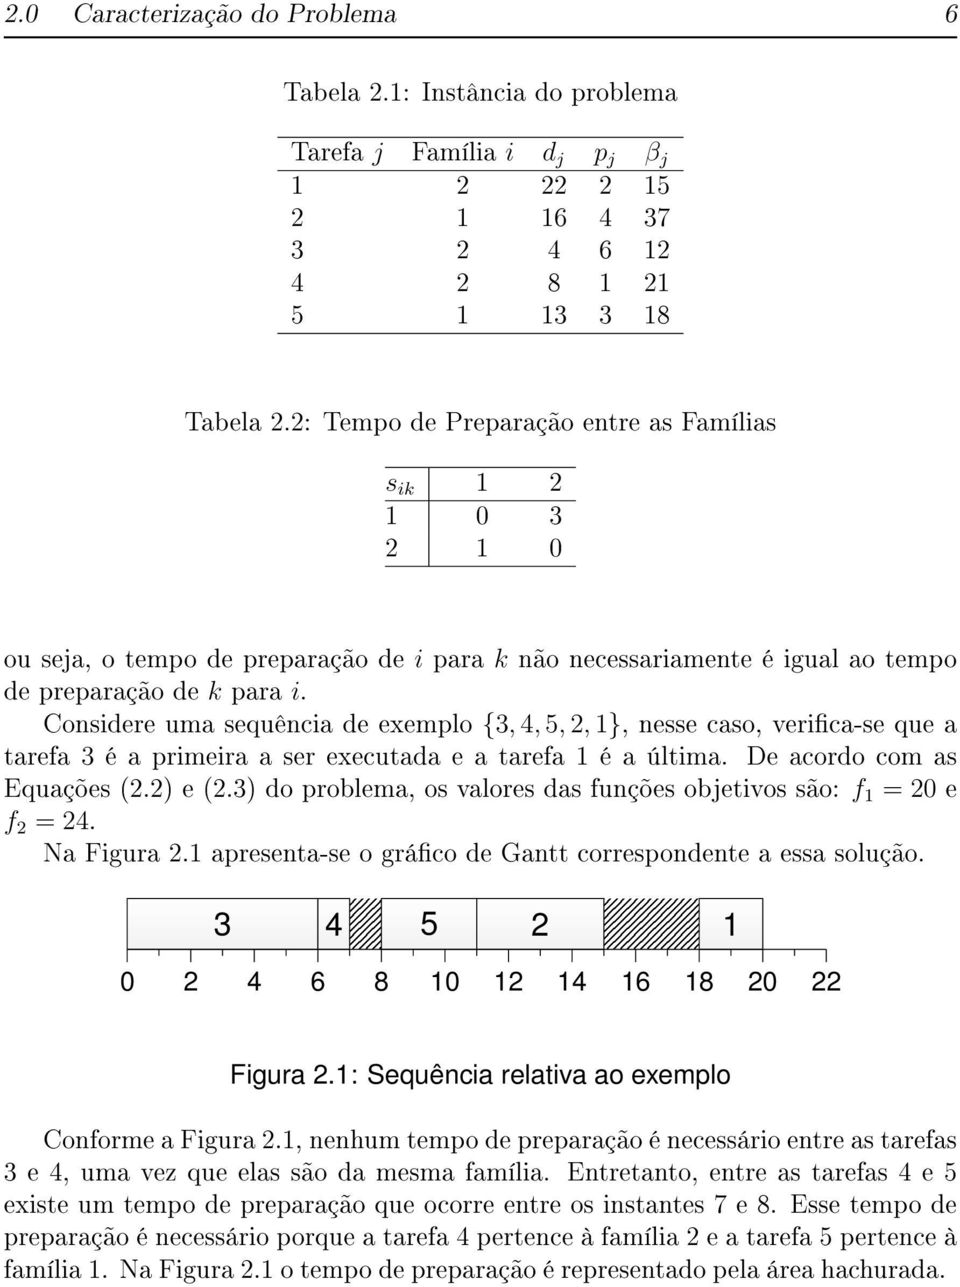 Considere uma sequência de exemplo {3, 4, 5, 2, 1}, nesse caso, verica-se que a tarefa 3 é a primeira a ser executada e a tarefa 1 é a última. De acordo com as Equações (2.2) e (2.